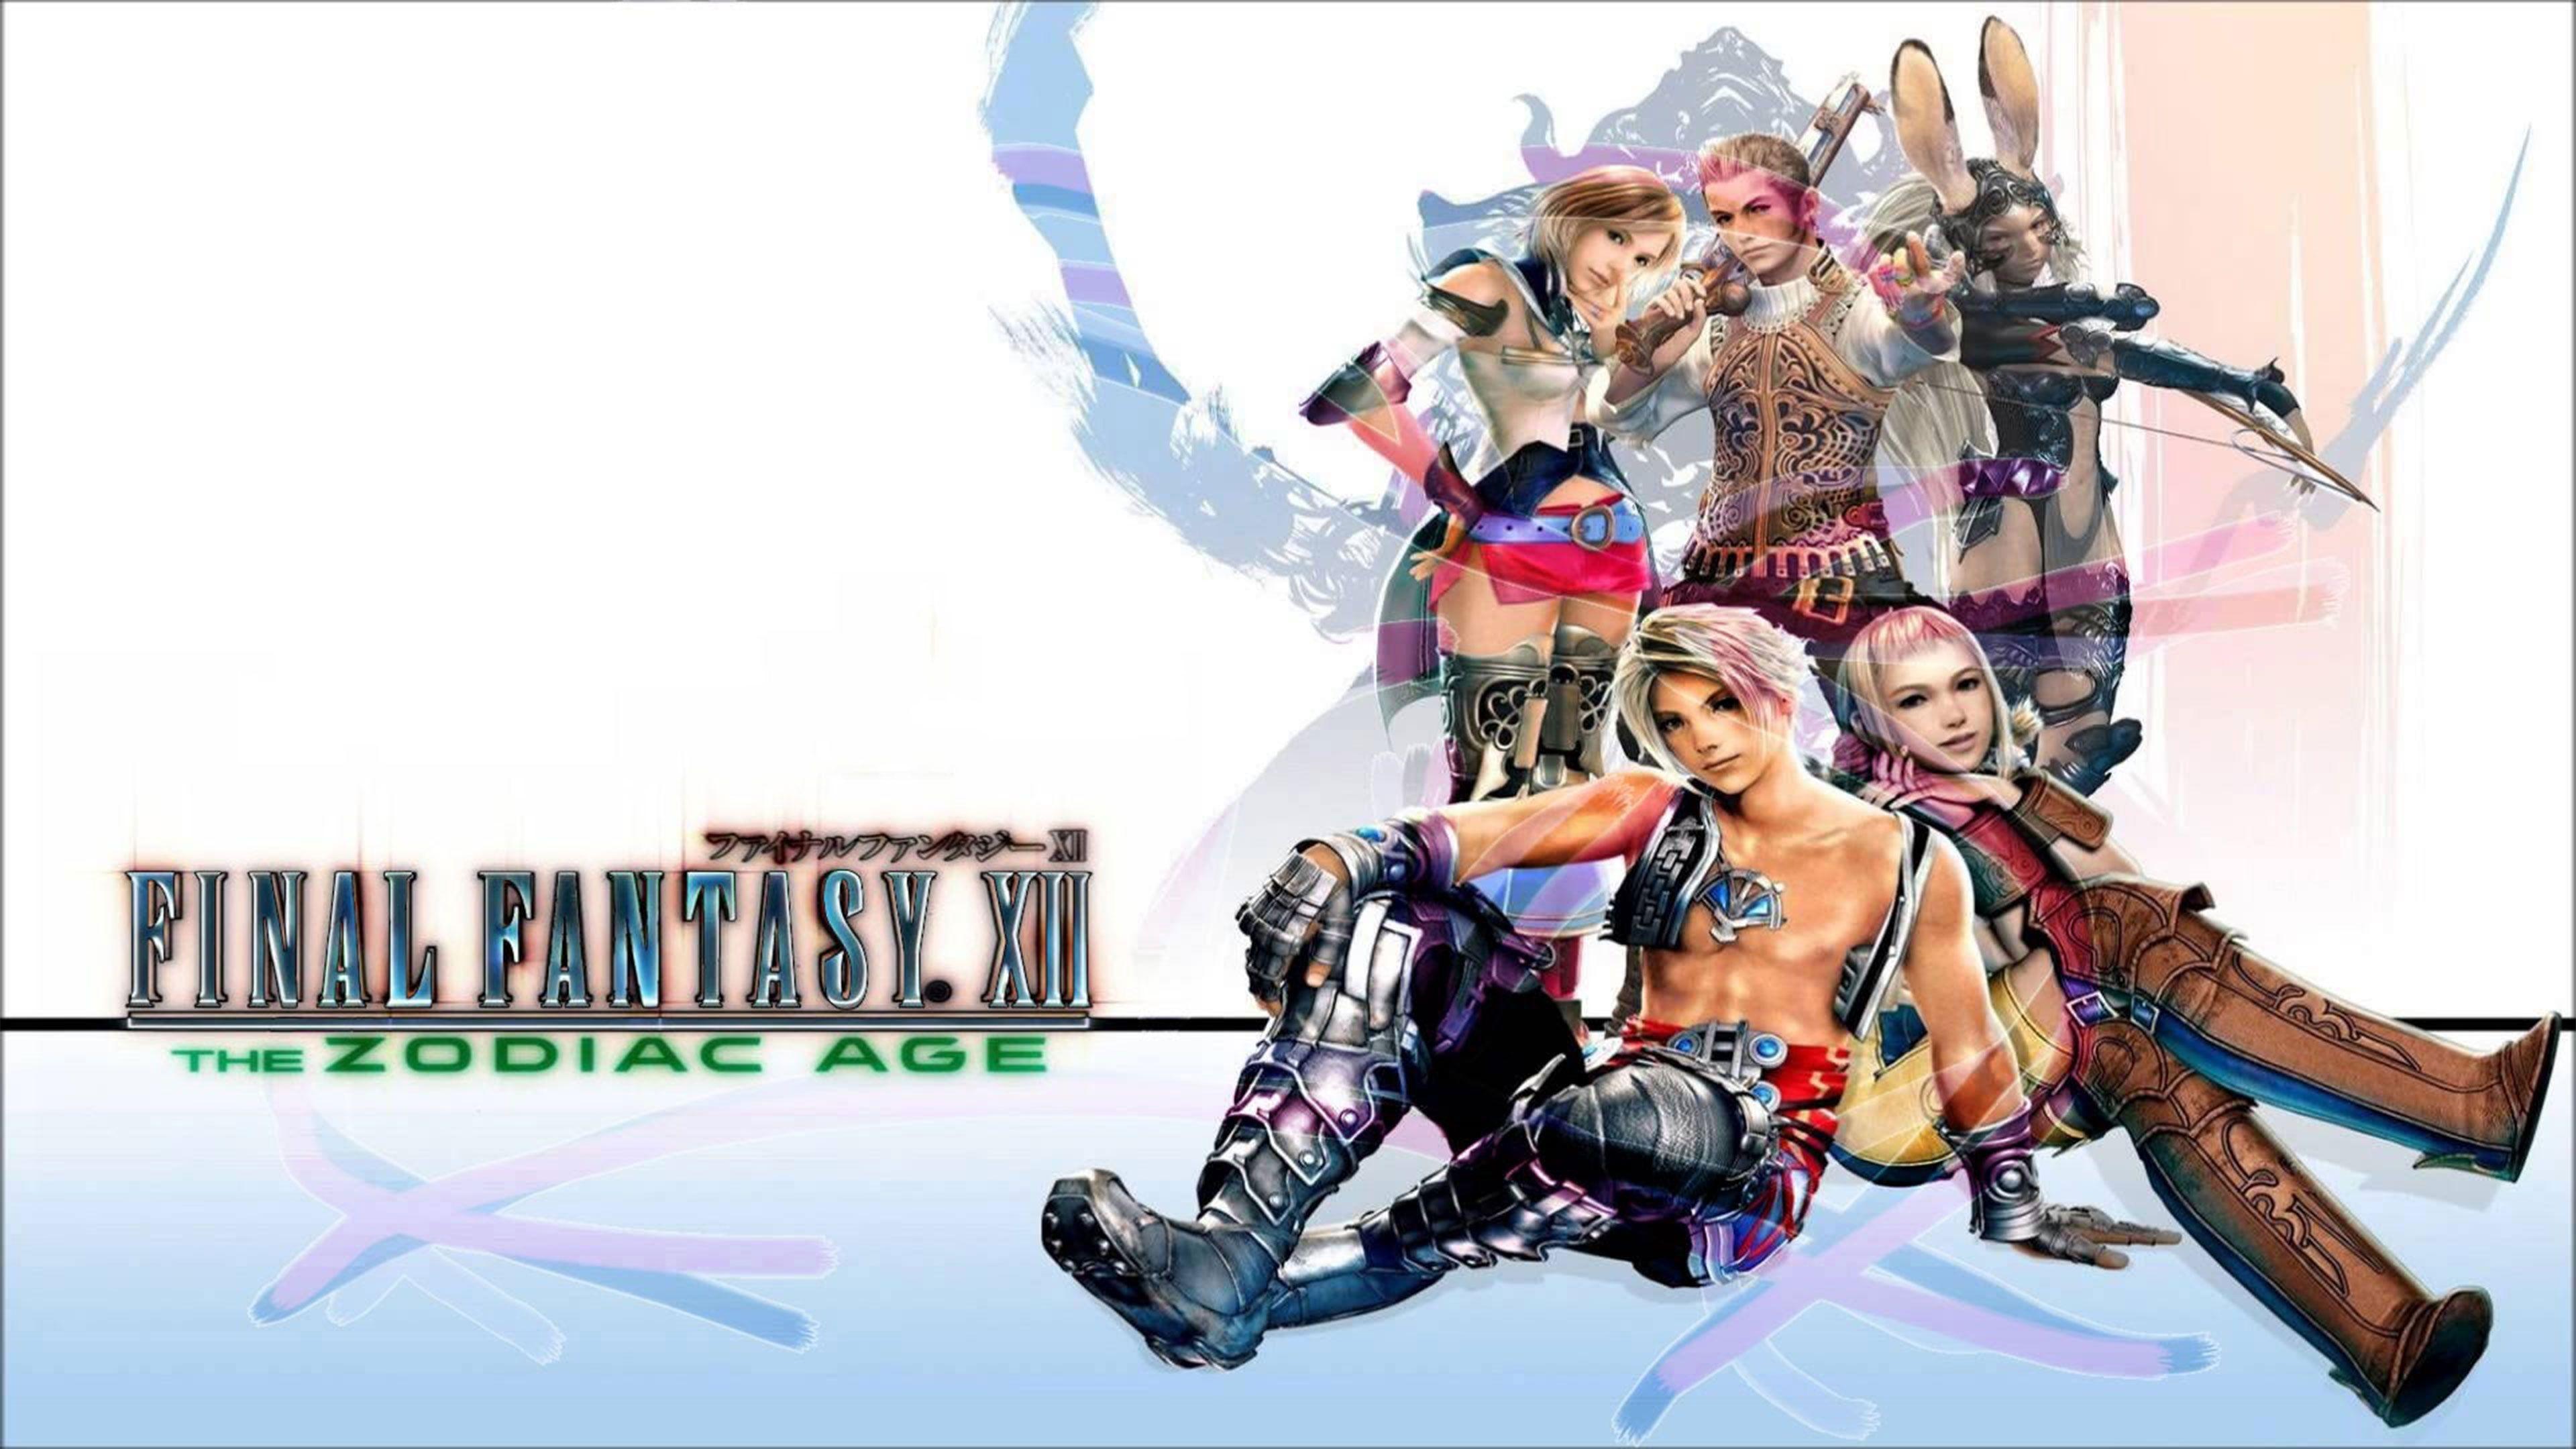 Final Fantasy XII The Zodiac Age Wallpaper in Ultra HDK